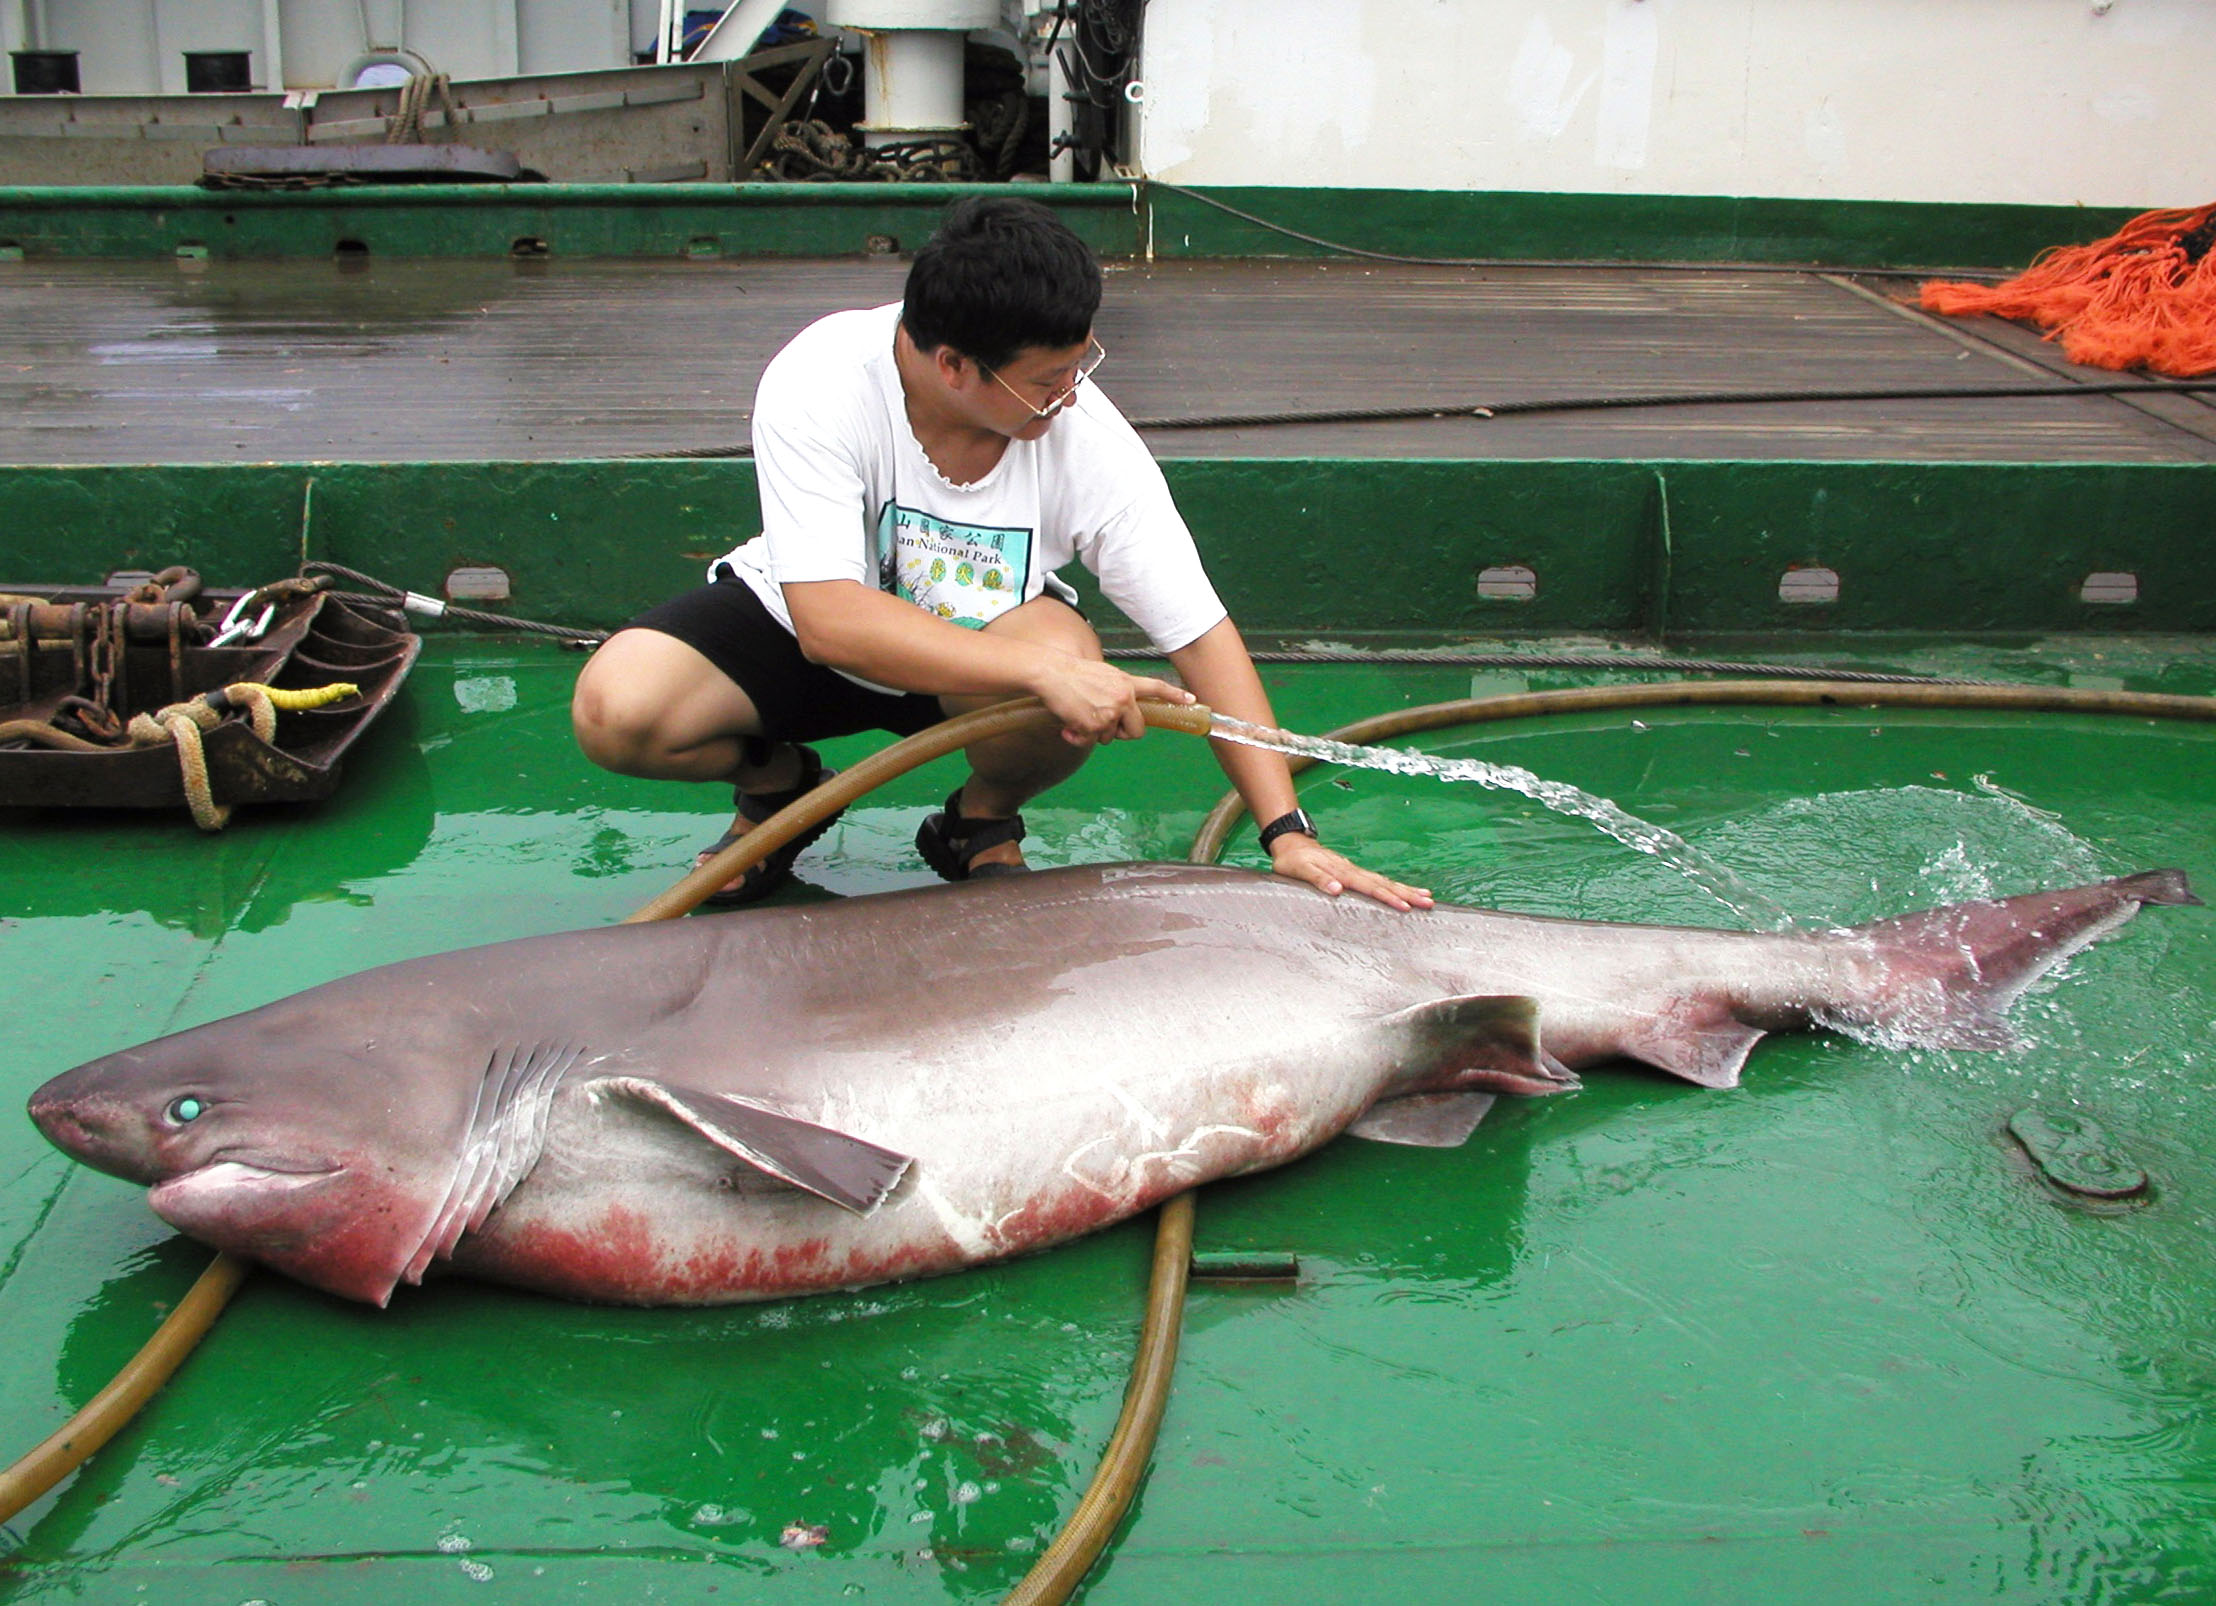 李柏鋒在研究船上清理捕獲的鯊魚。圖片來源│李柏鋒提供